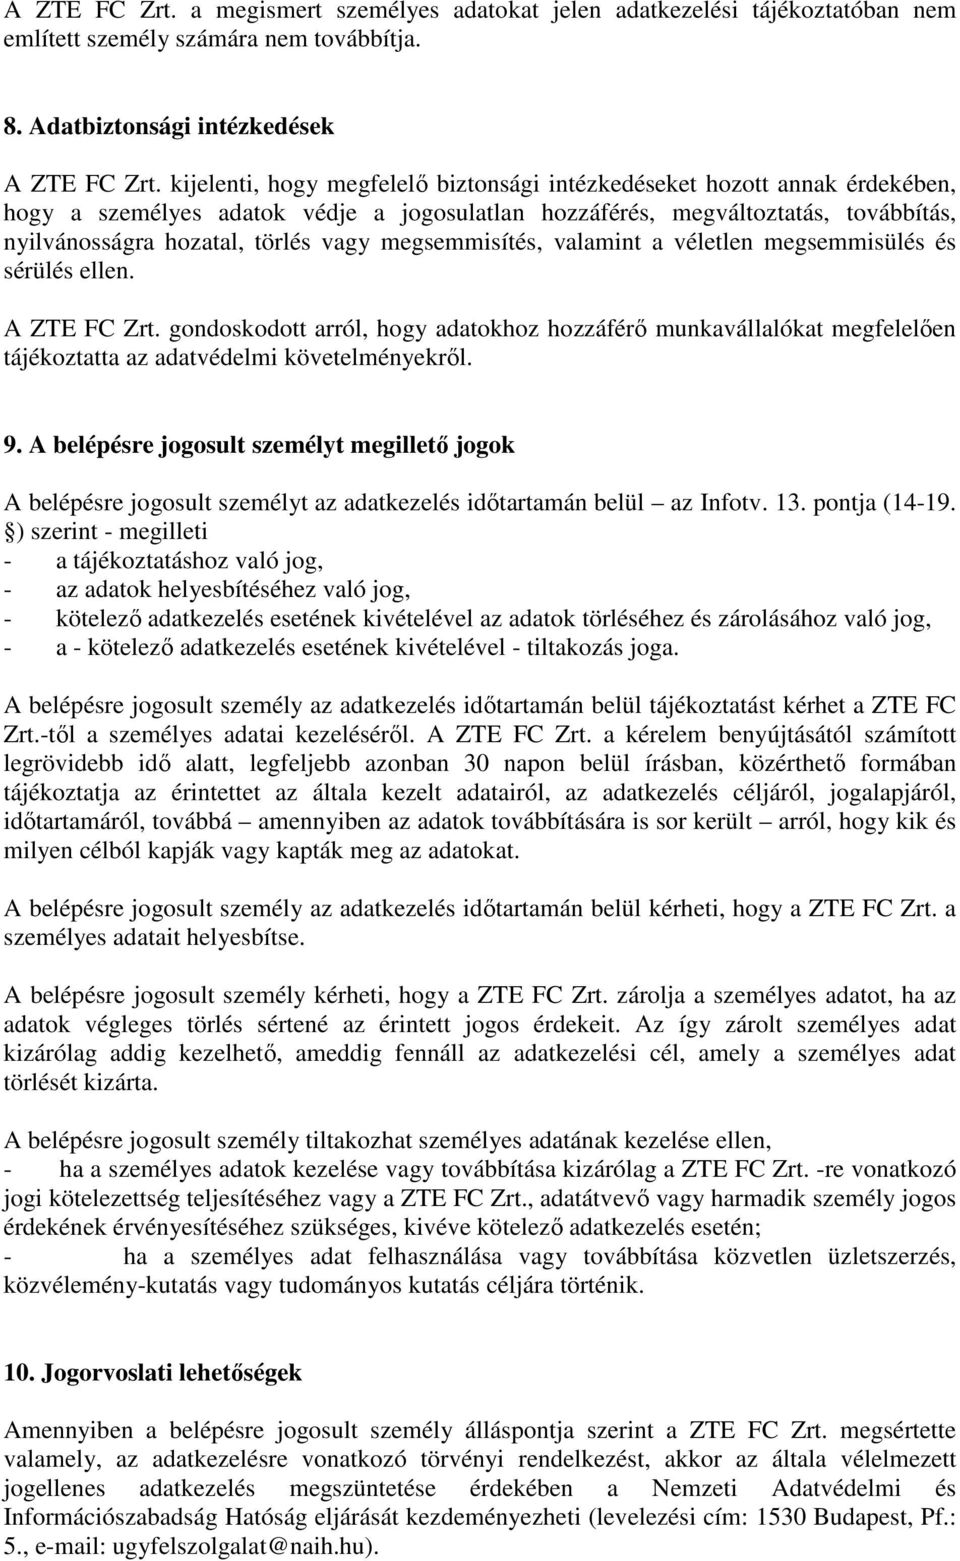 megsemmisítés, valamint a véletlen megsemmisülés és sérülés ellen. A ZTE FC Zrt. gondoskodott arról, hogy adatokhoz hozzáférı munkavállalókat megfelelıen tájékoztatta az adatvédelmi követelményekrıl.